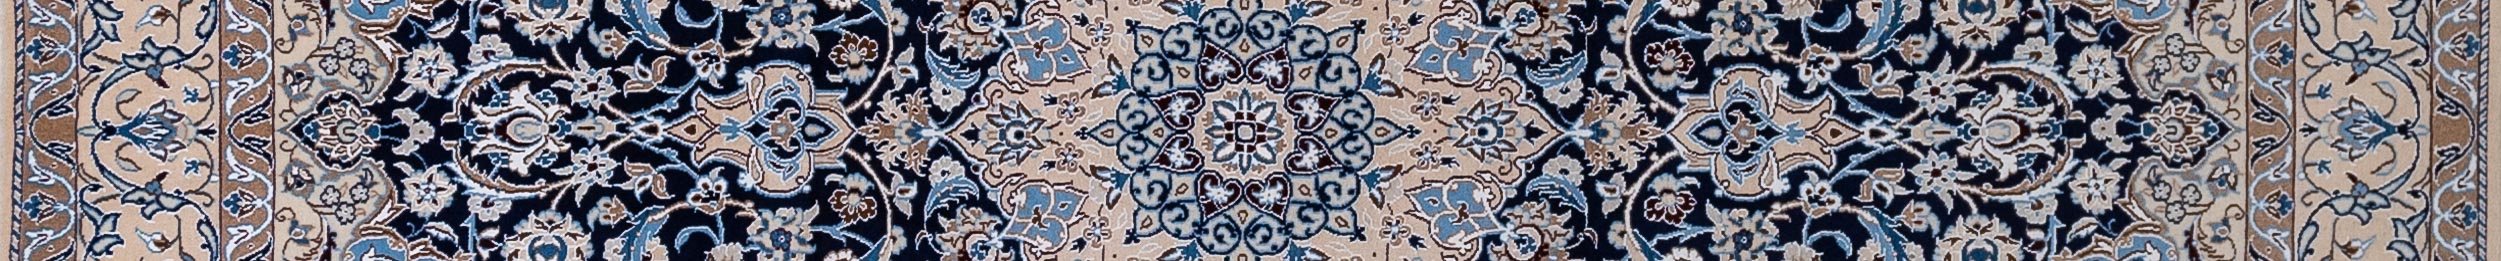 Nain Persian Carpet Rug N1Carpet Canada Montreal Tapis Persan 1950